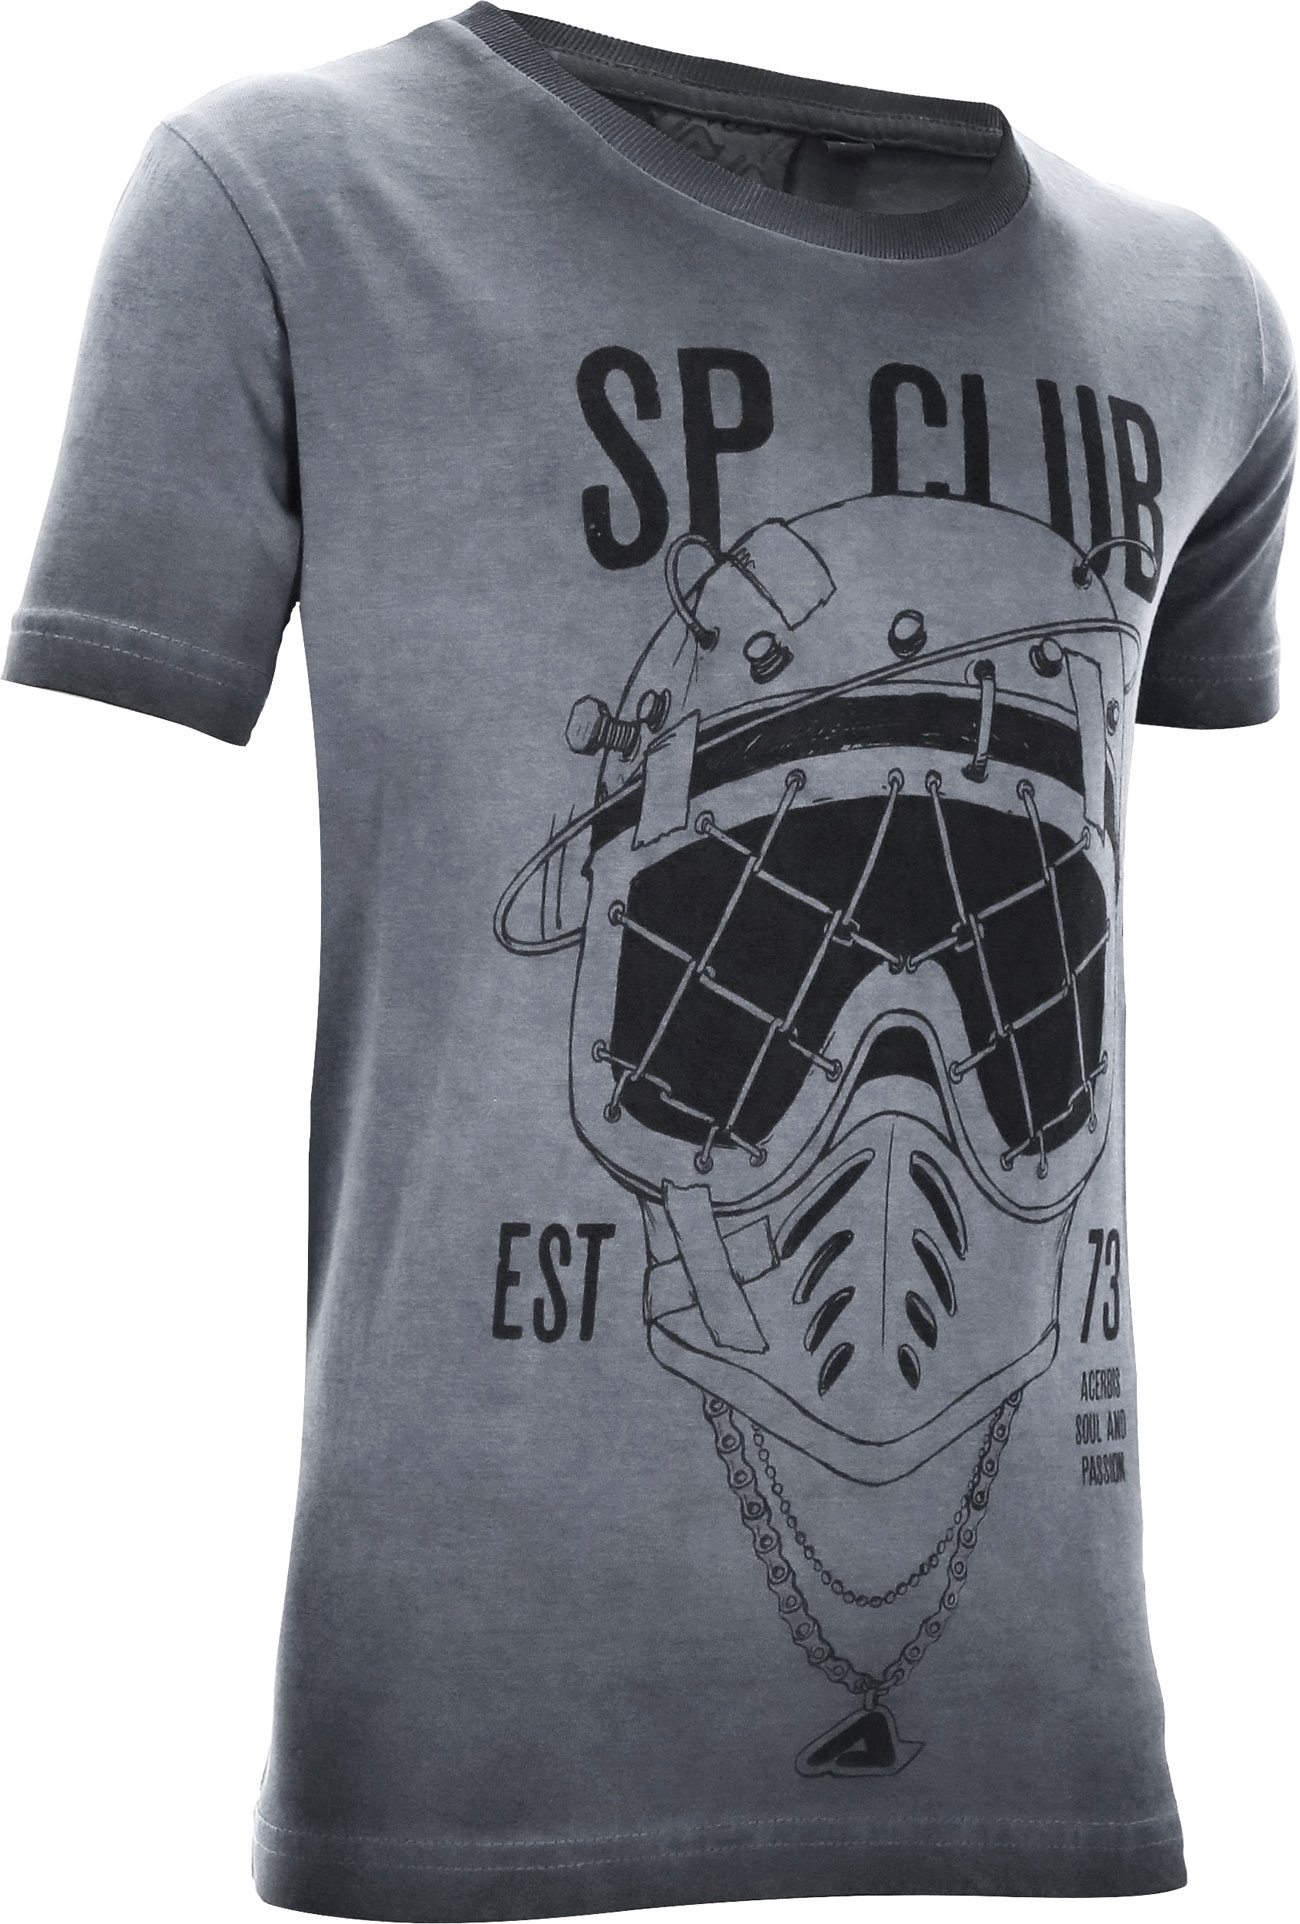 Acerbis SP Club Diver, t-shirt pour enfants - Gris/Noir - XXL